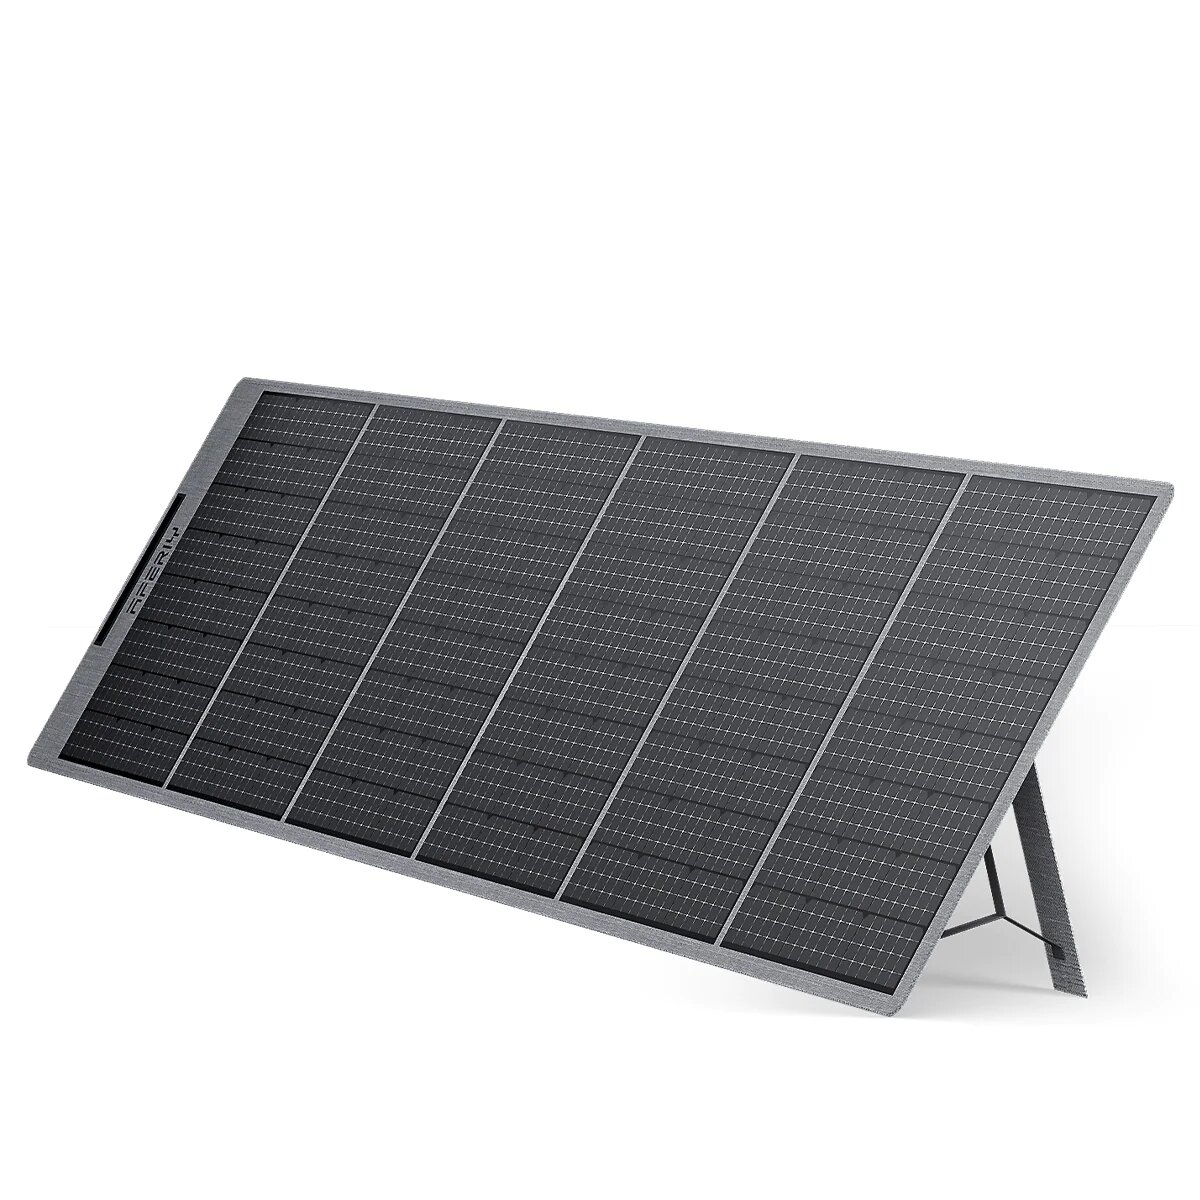 [EU Direct] AFERIY AF-S400 Painéis Solares Portáteis Dobráveis de 400W Células Mono, Carregador Solar Leve com Saídas USB DC, Painel Solar à Prova d'Água IP65 para RV Camping ao Ar Livre